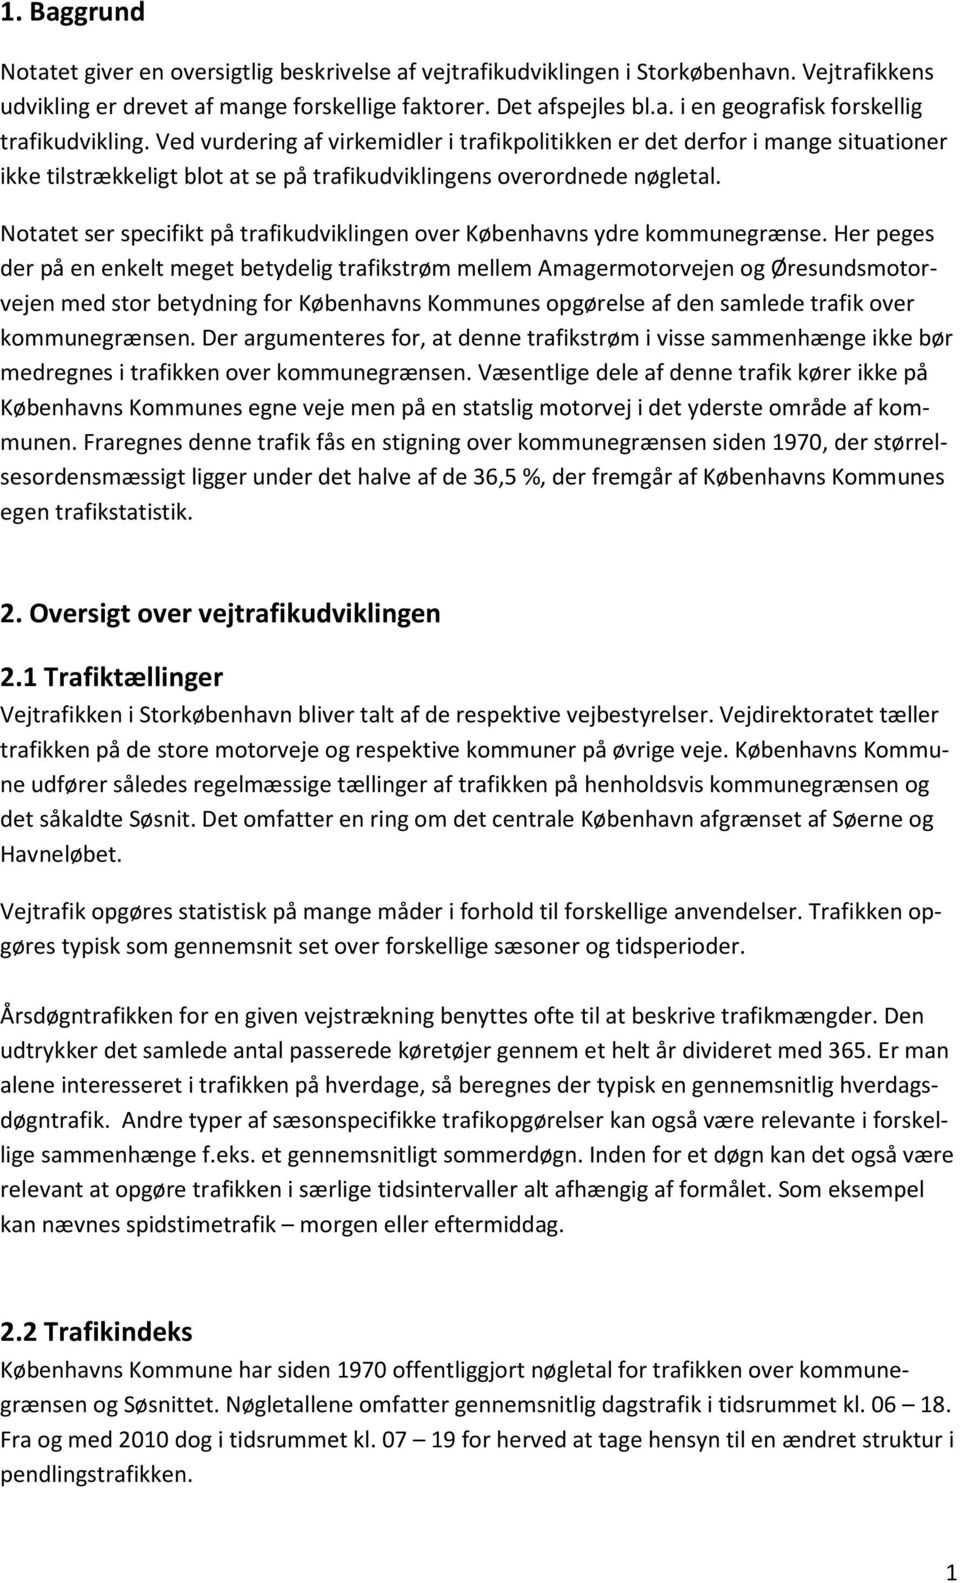 Notatet ser specifikt på trafikudviklingen over Københavns ydre kommunegrænse.